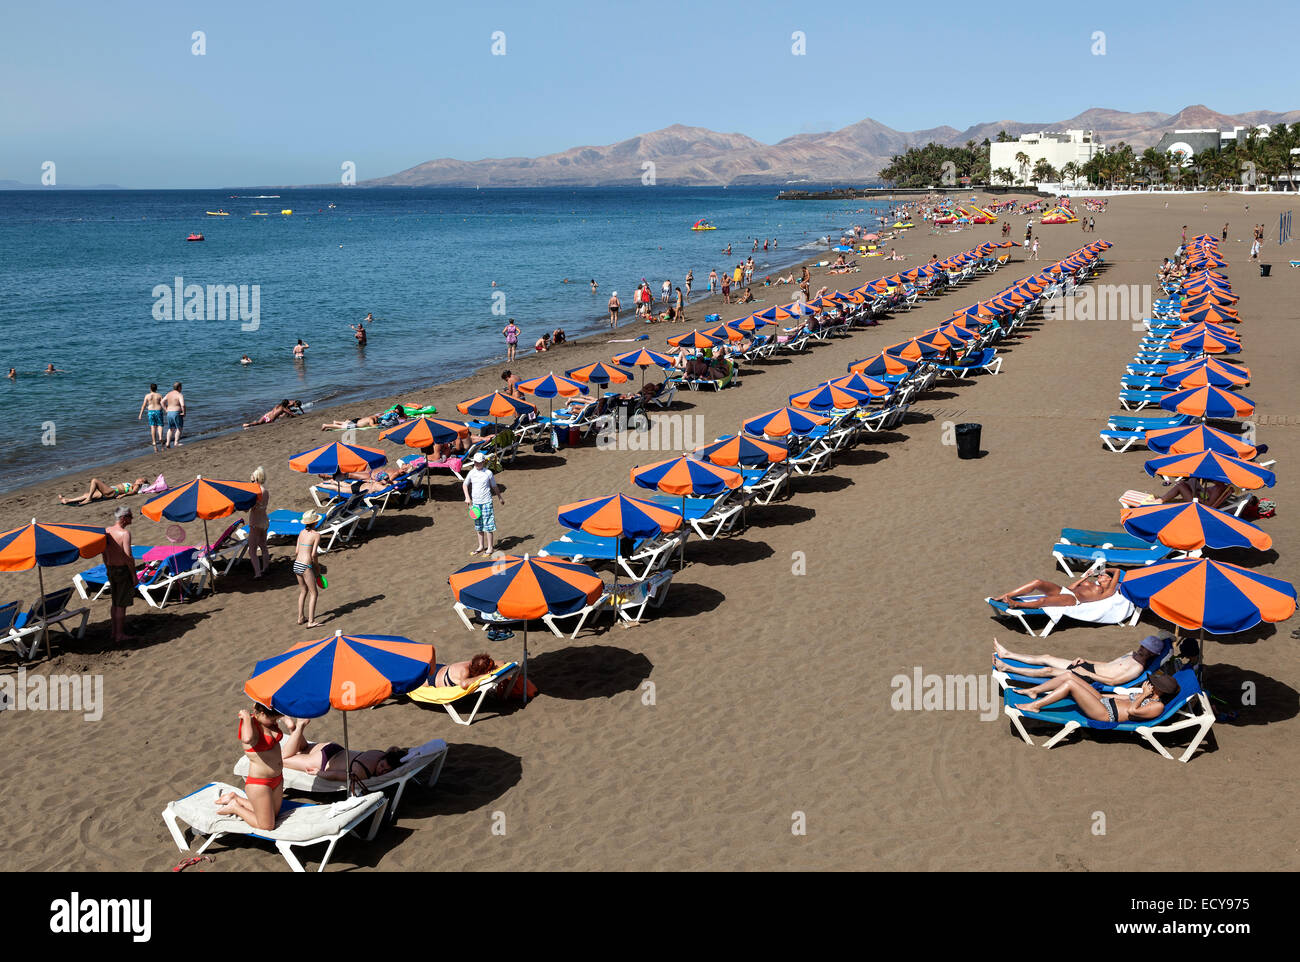 La plage de Playa Blanca avec parasols et chaises longues, derrière les montagnes de Los Ajaches, Puerto del Carmen, Lanzarote Banque D'Images